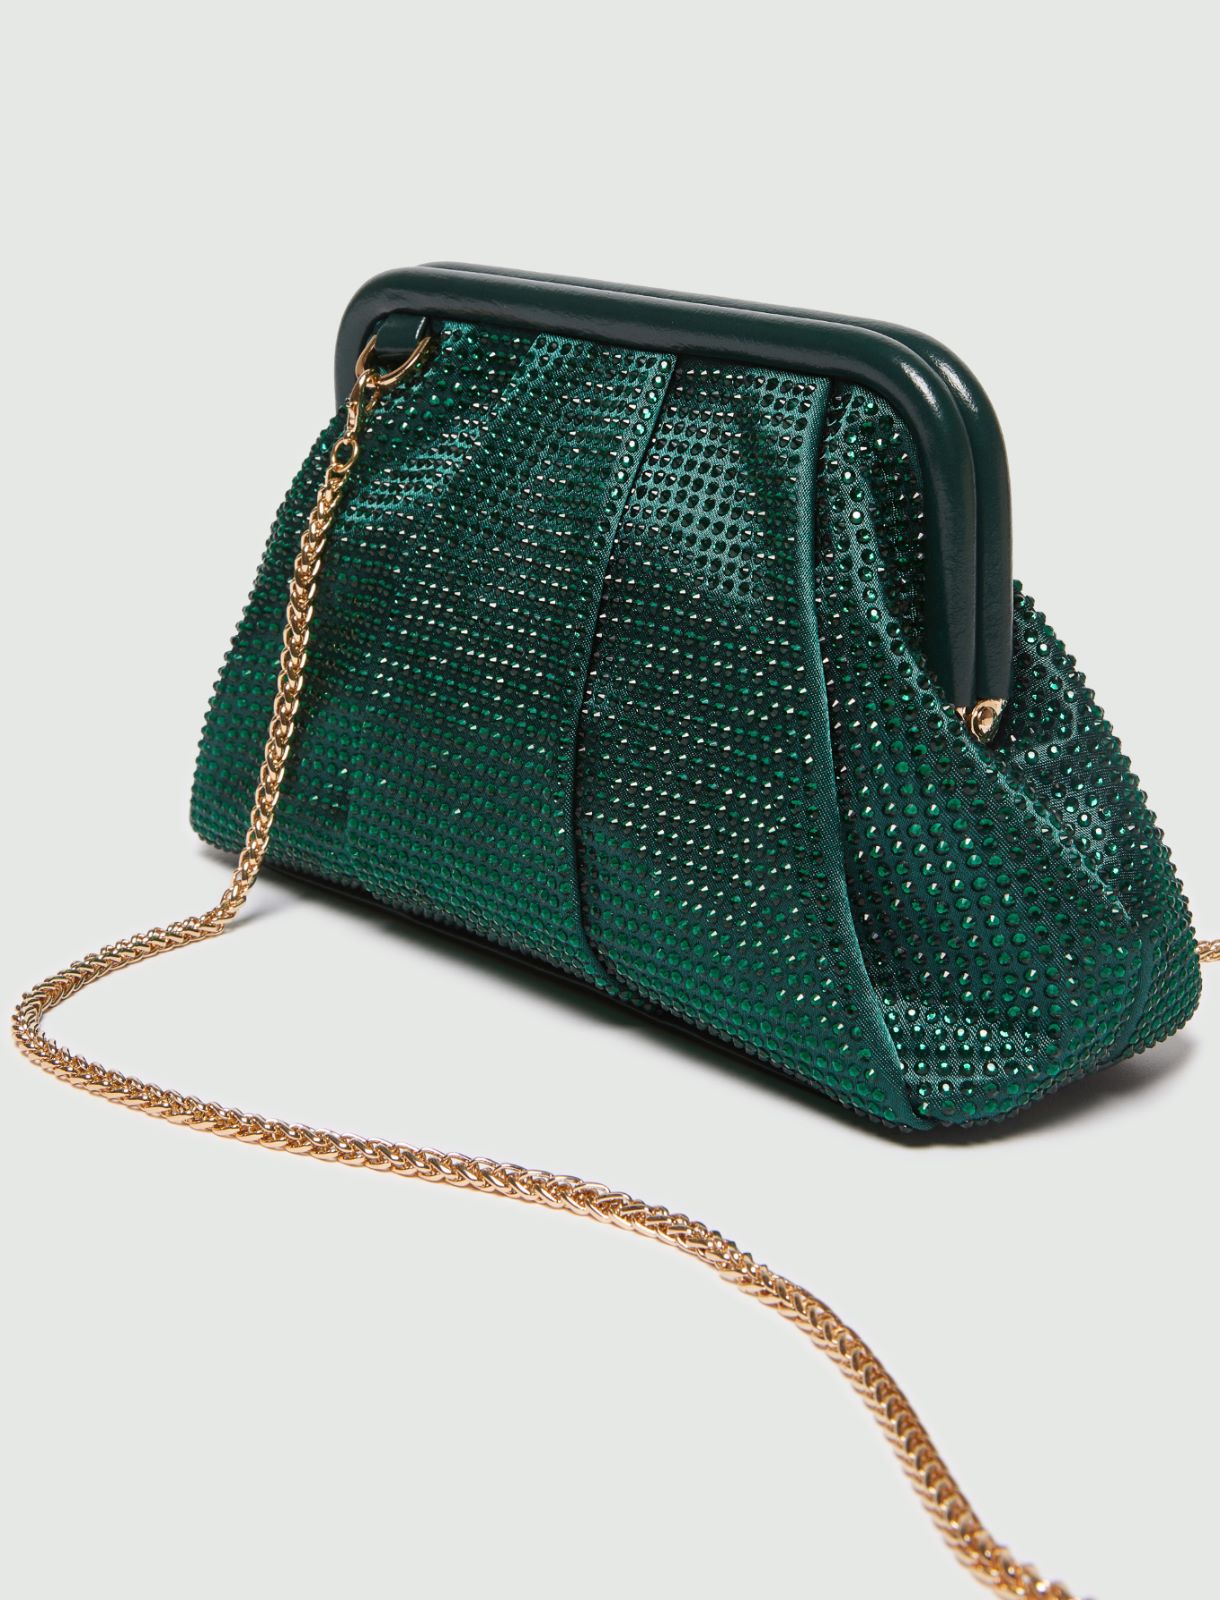 Rhinestone clutch bag - Green - Marella - 3